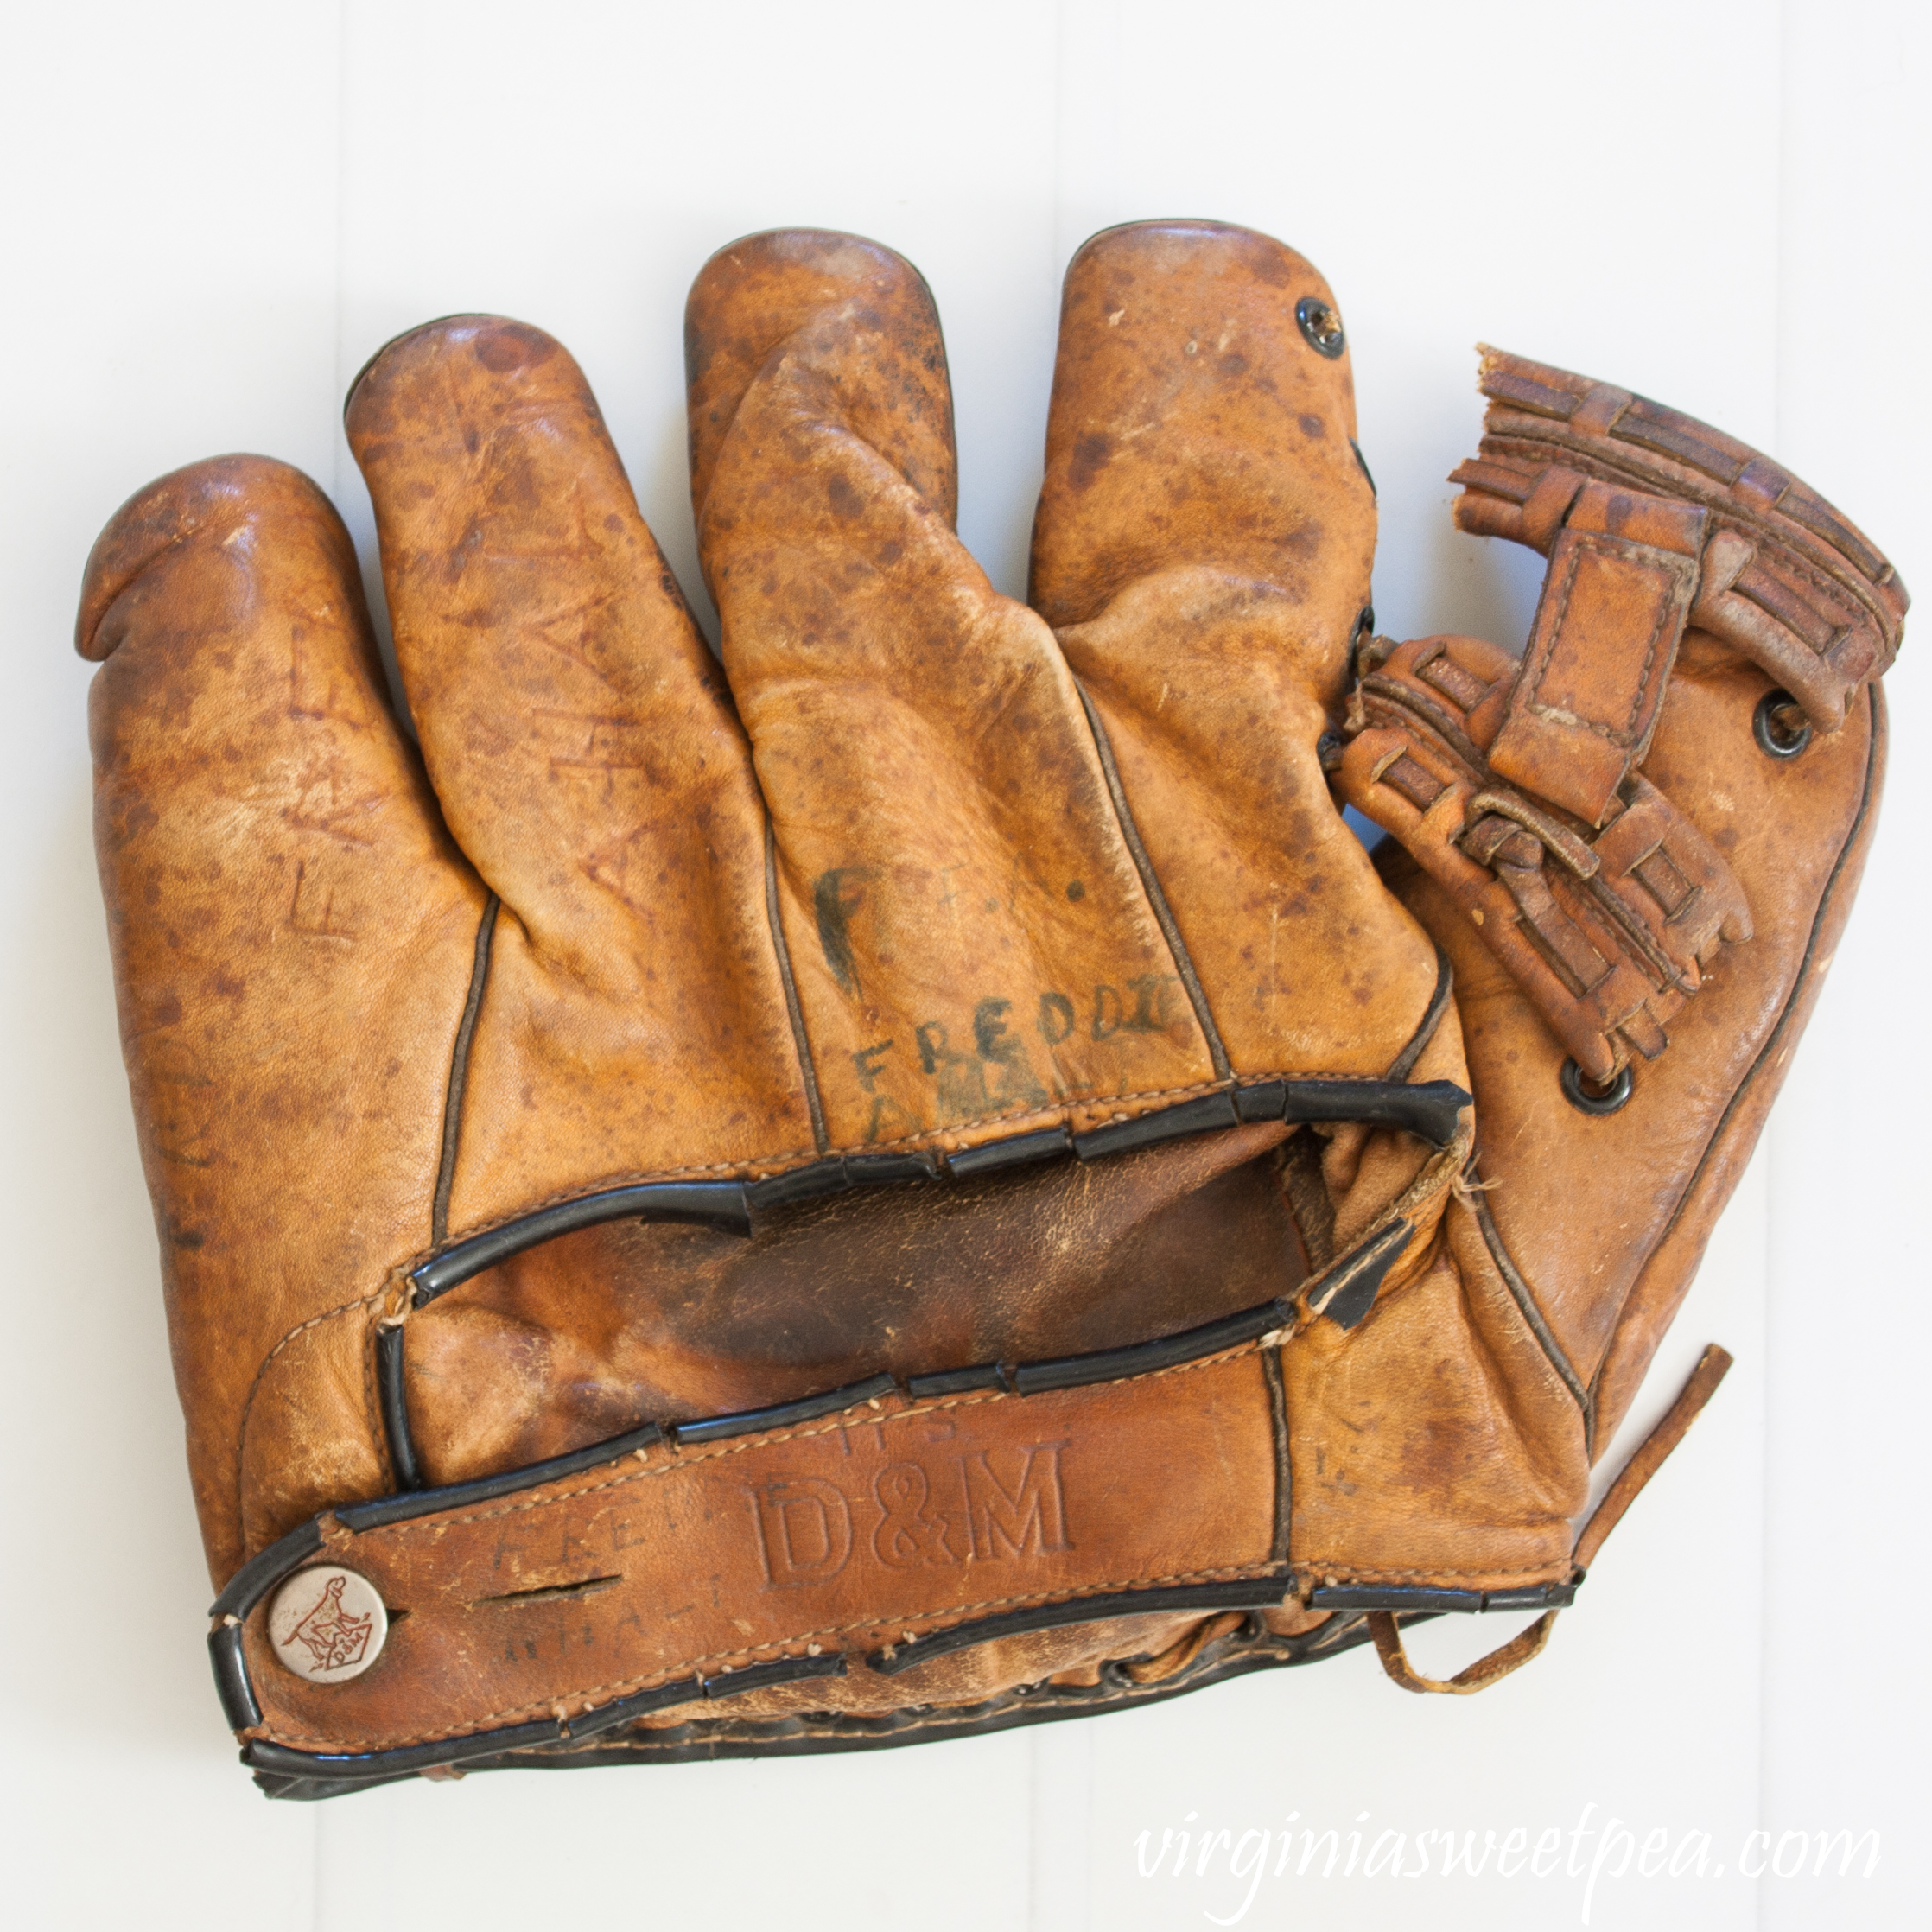 D&M Joe Cronin Baseball Glove